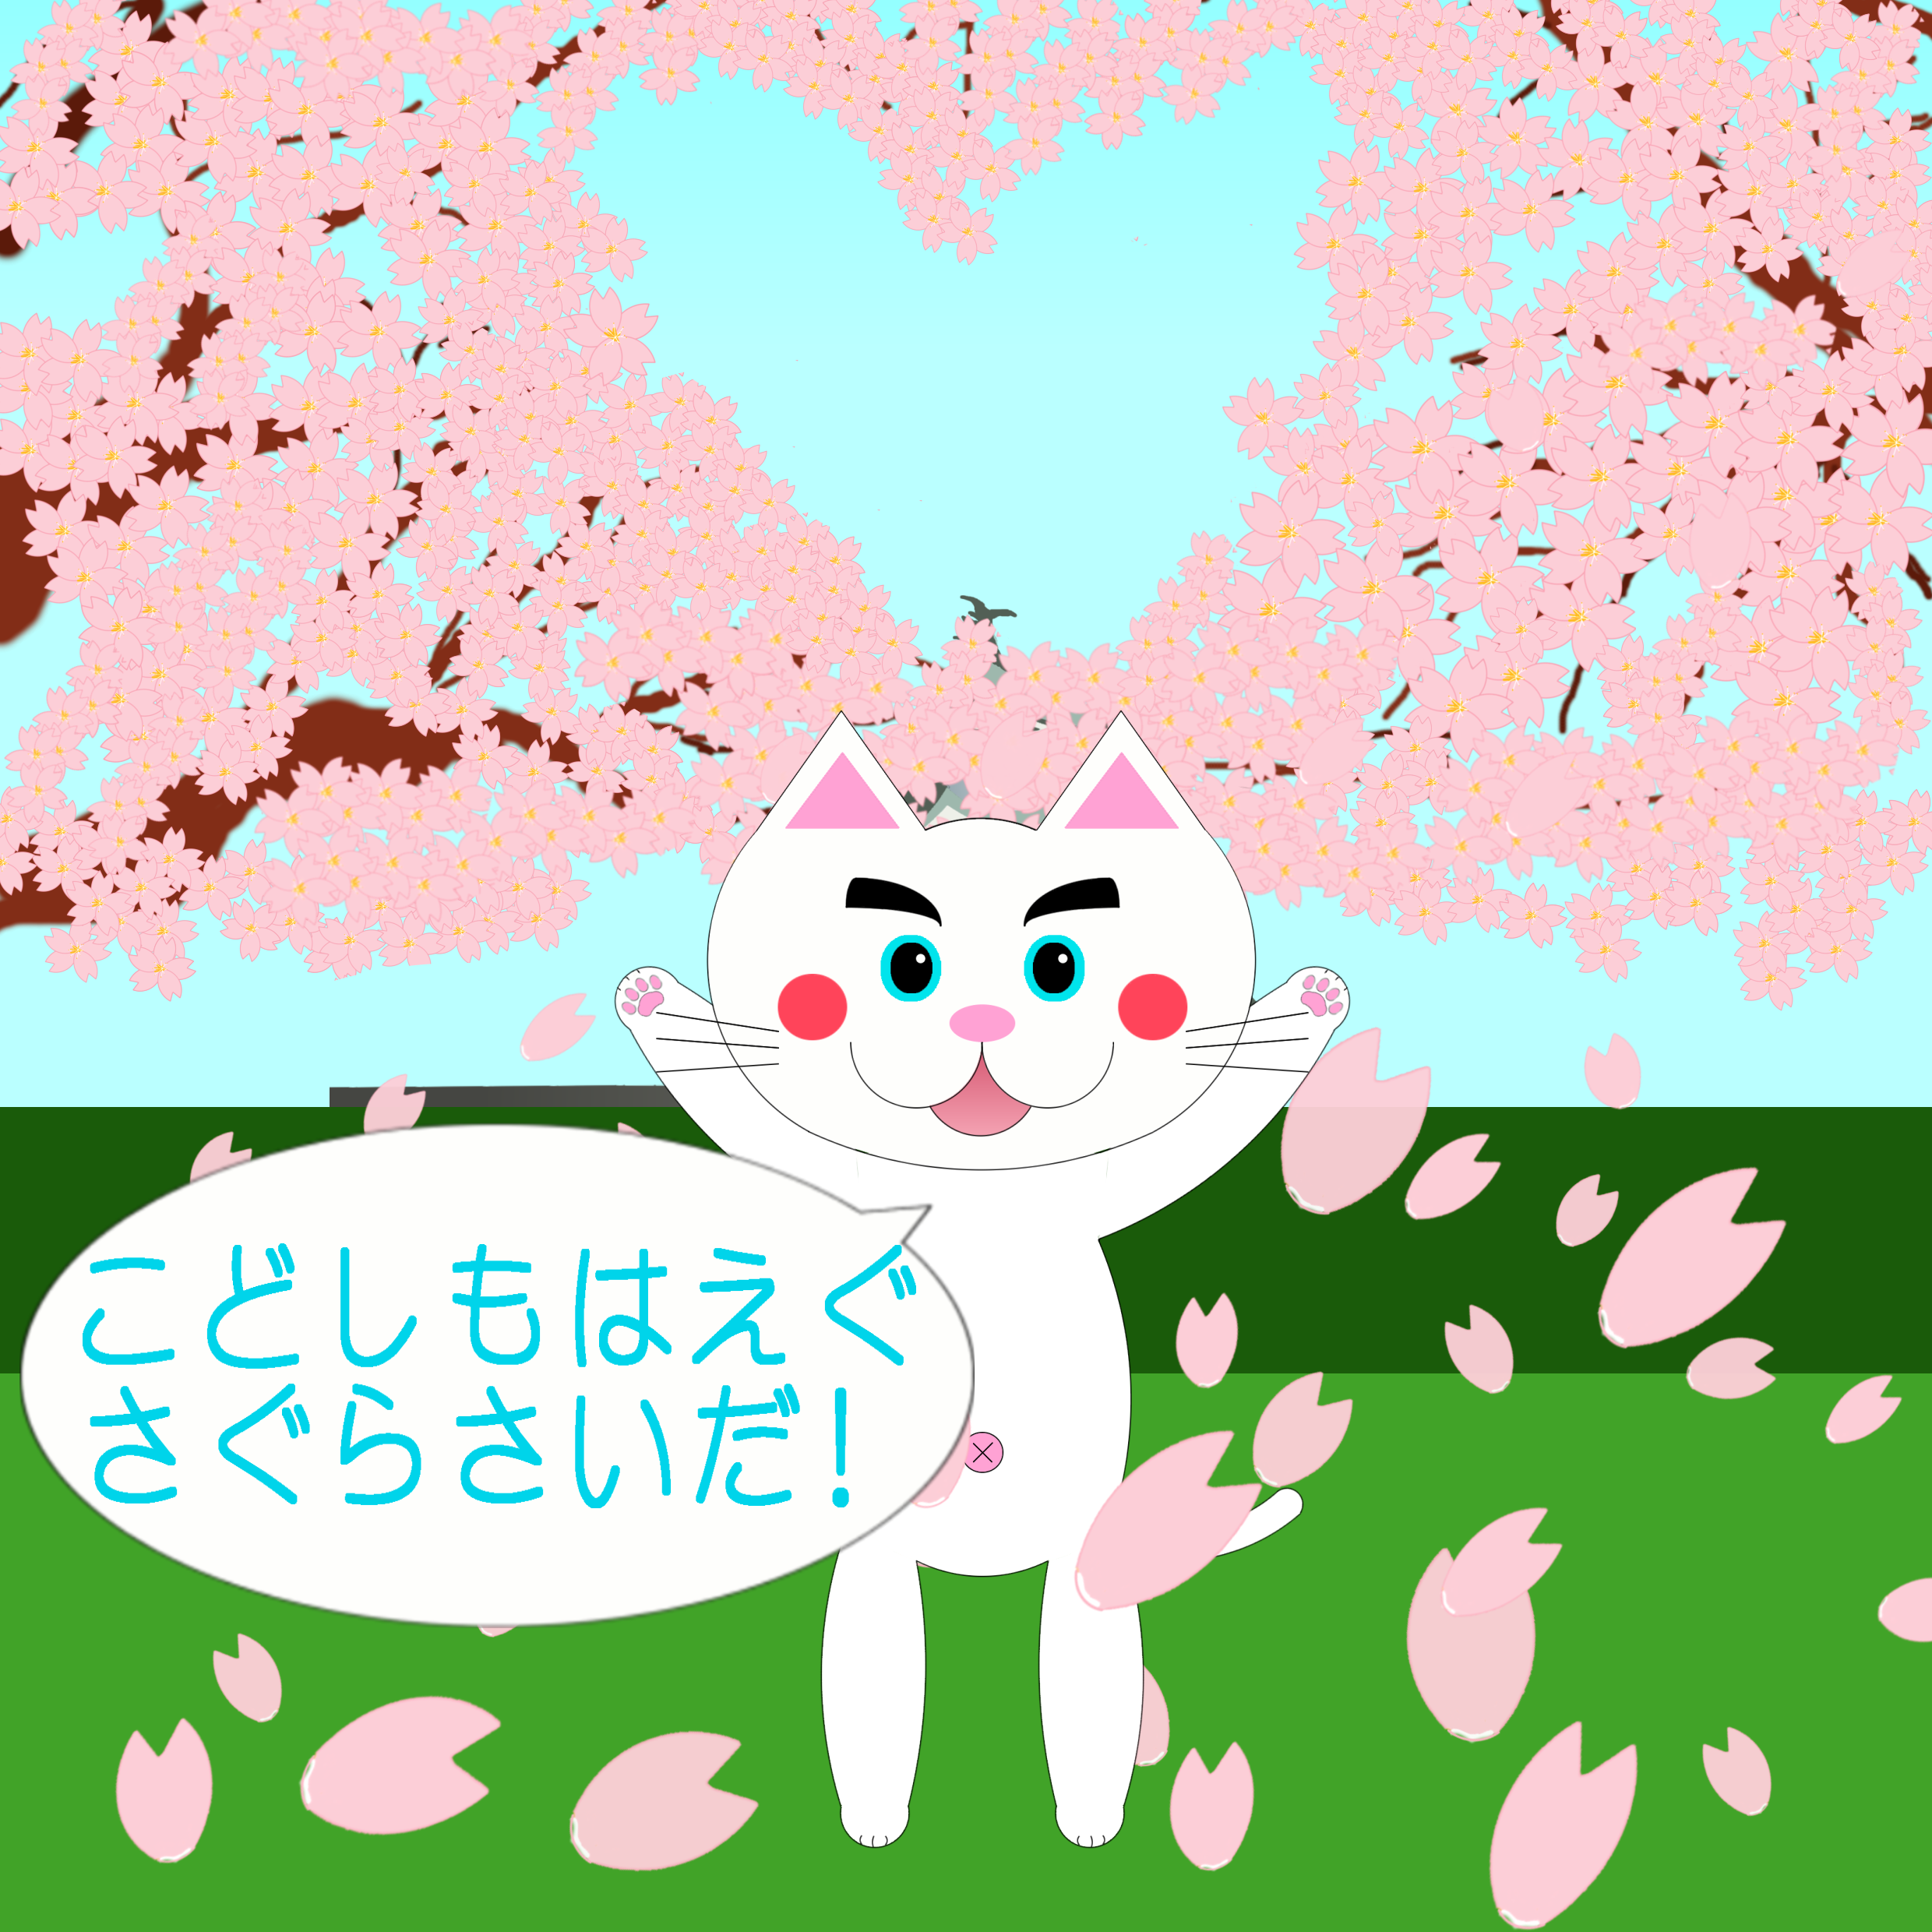 「なまねご」のワンポイント方言-桜のハートで記念撮影のレオ君